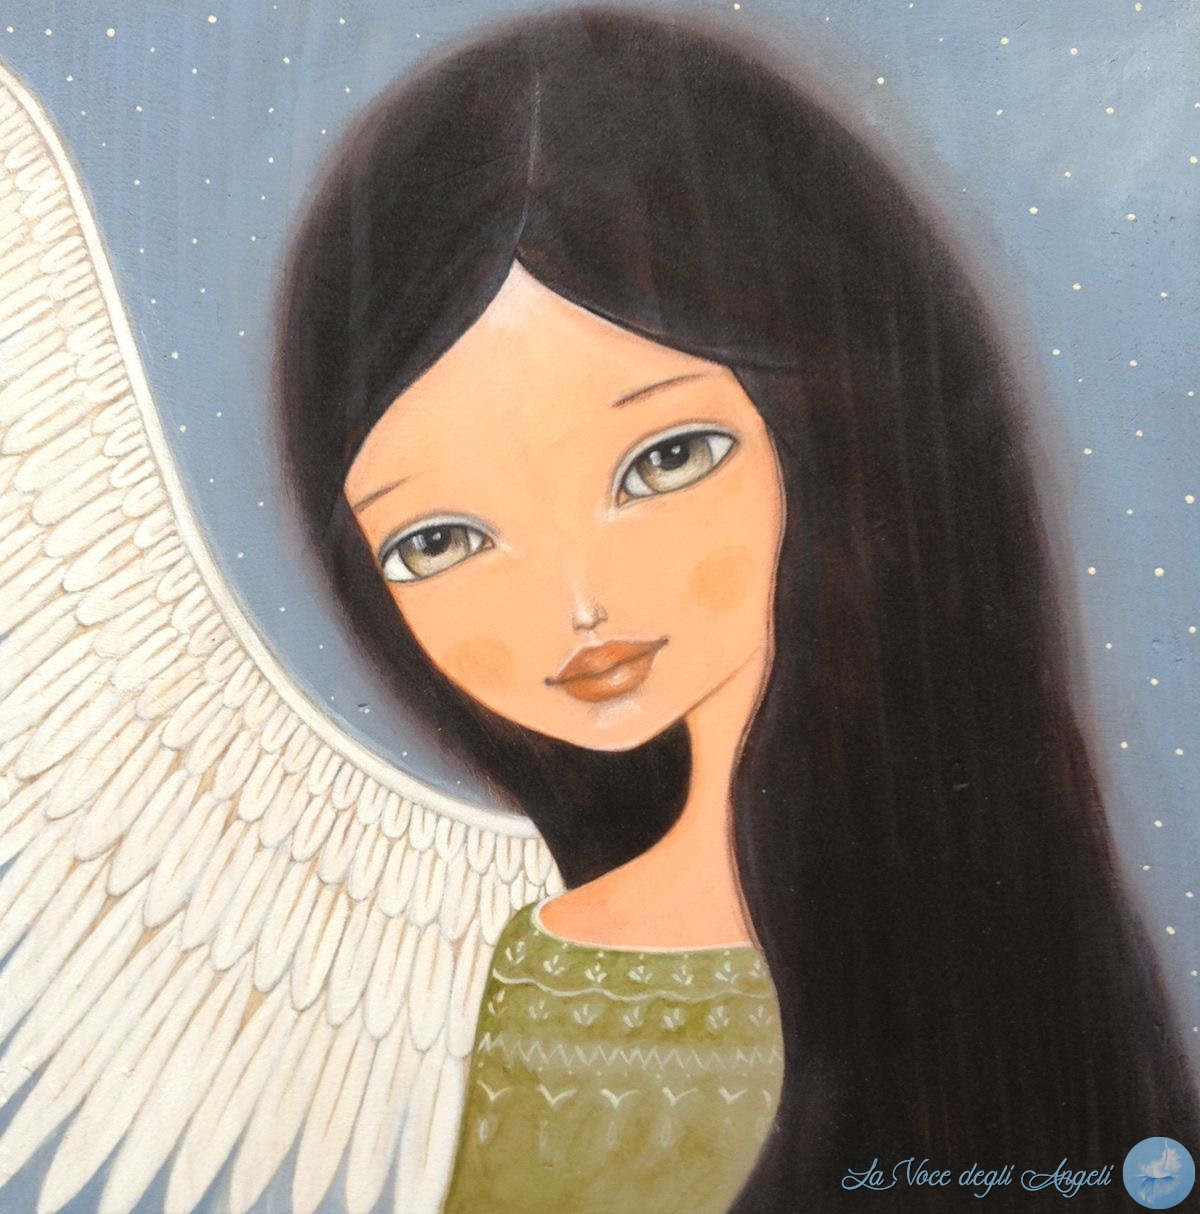 4 Passi Da Fare Per Ricevere L Aiuto Degli Angeli La Voce Degli Angeli